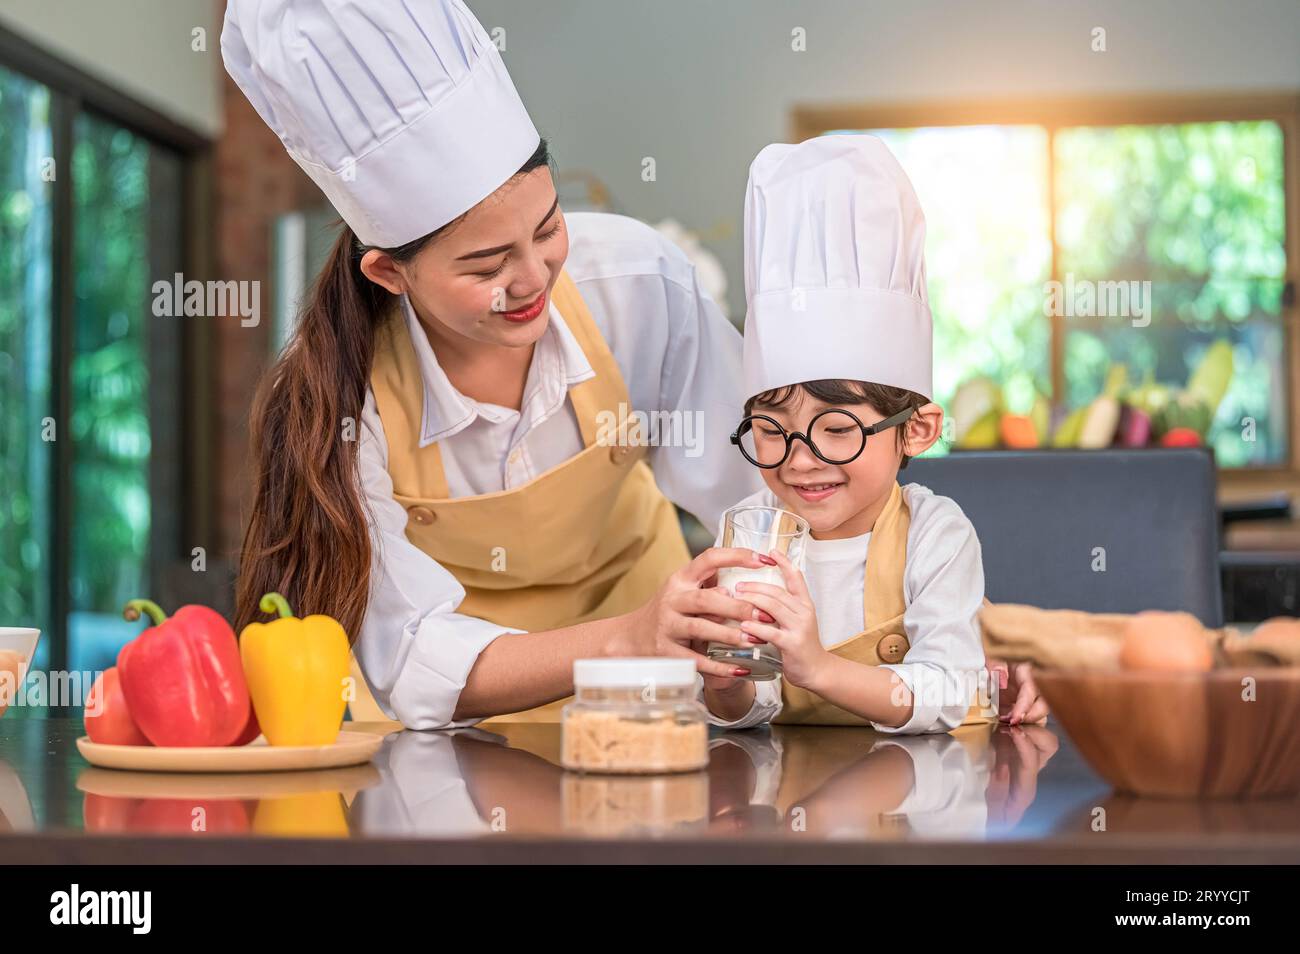 Asiatische Mutter hilft süßen kleinen Jungen, der Milch im Glas in der Küche zu Hause in Koch-Uniform trinkt. Die Menschen leben und sind glücklich Stockfoto